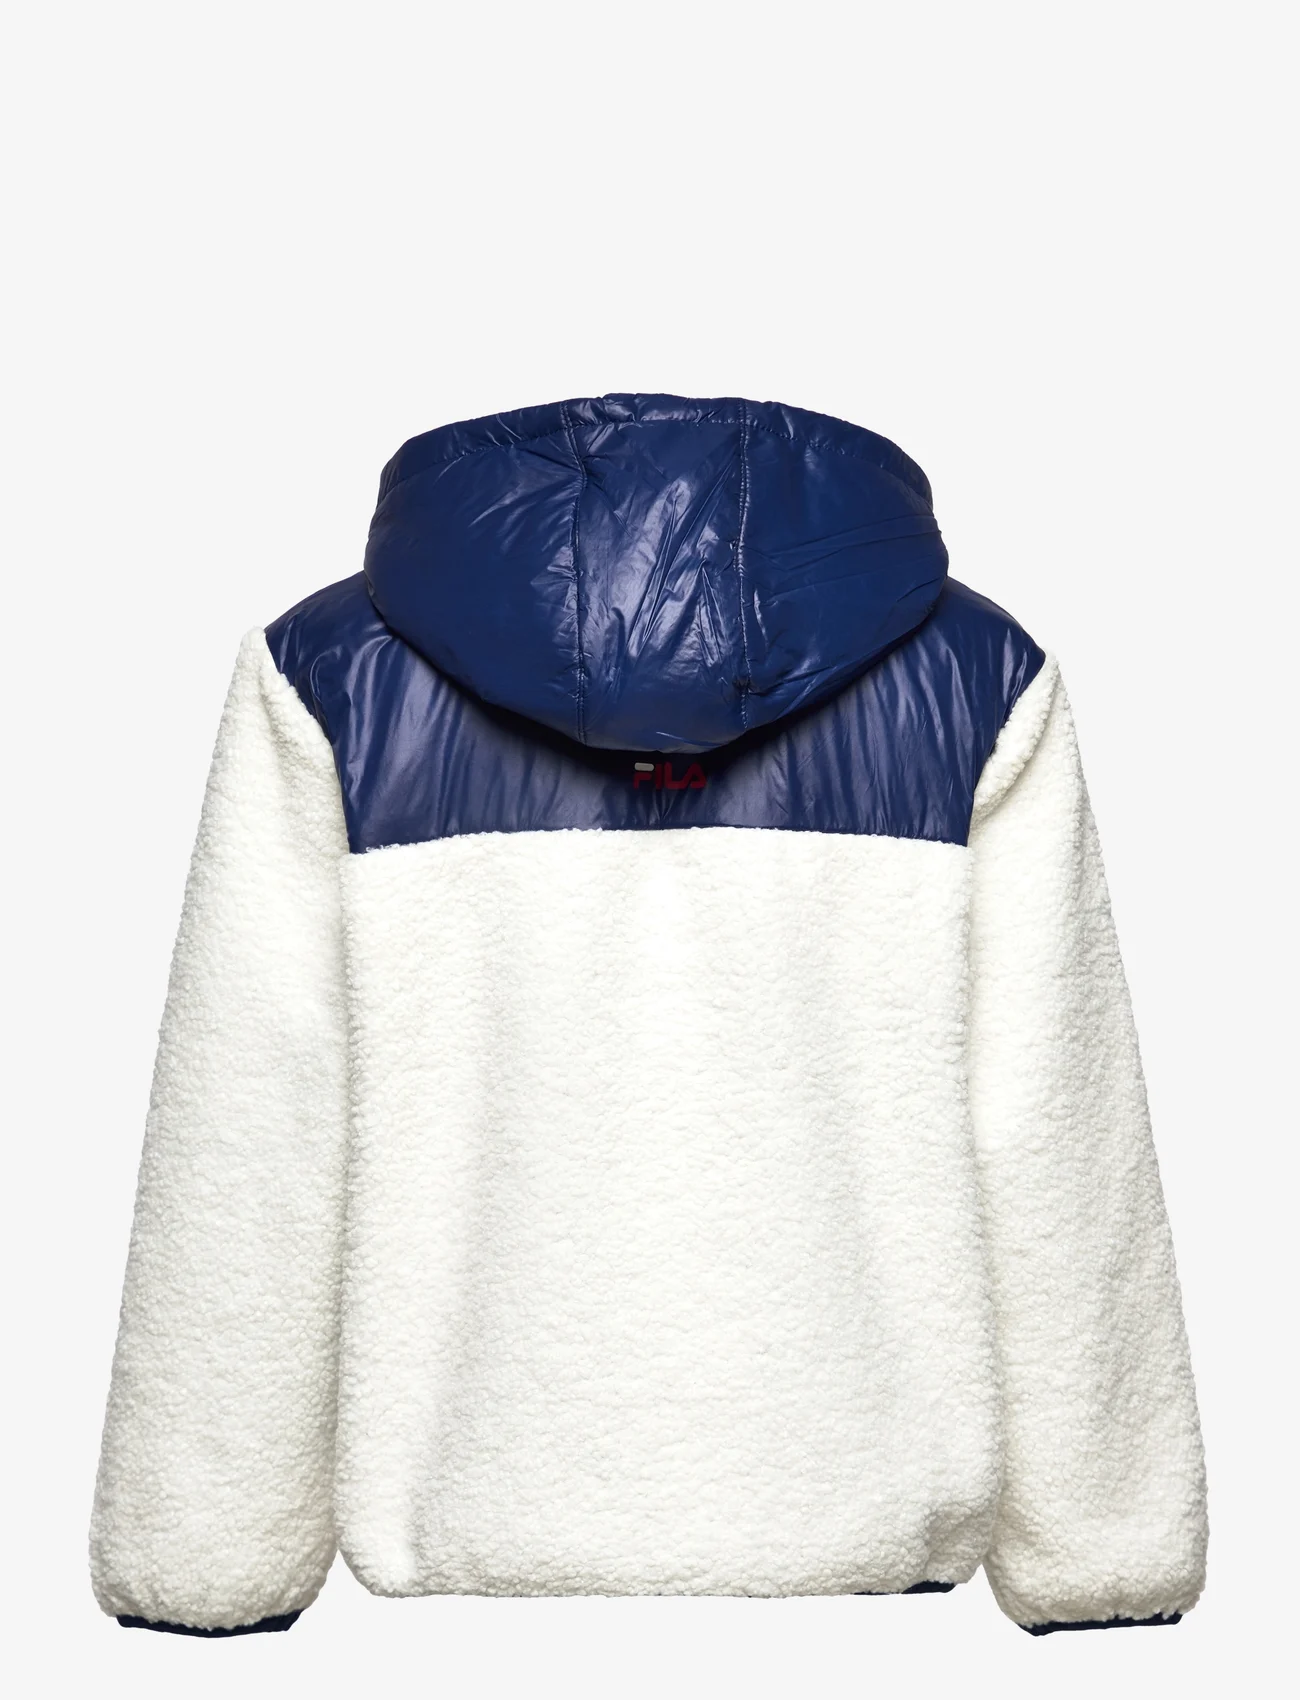 FILA - BORDEAUX sherpa jacket - isolierte jacken - egret-medieval blue - 1